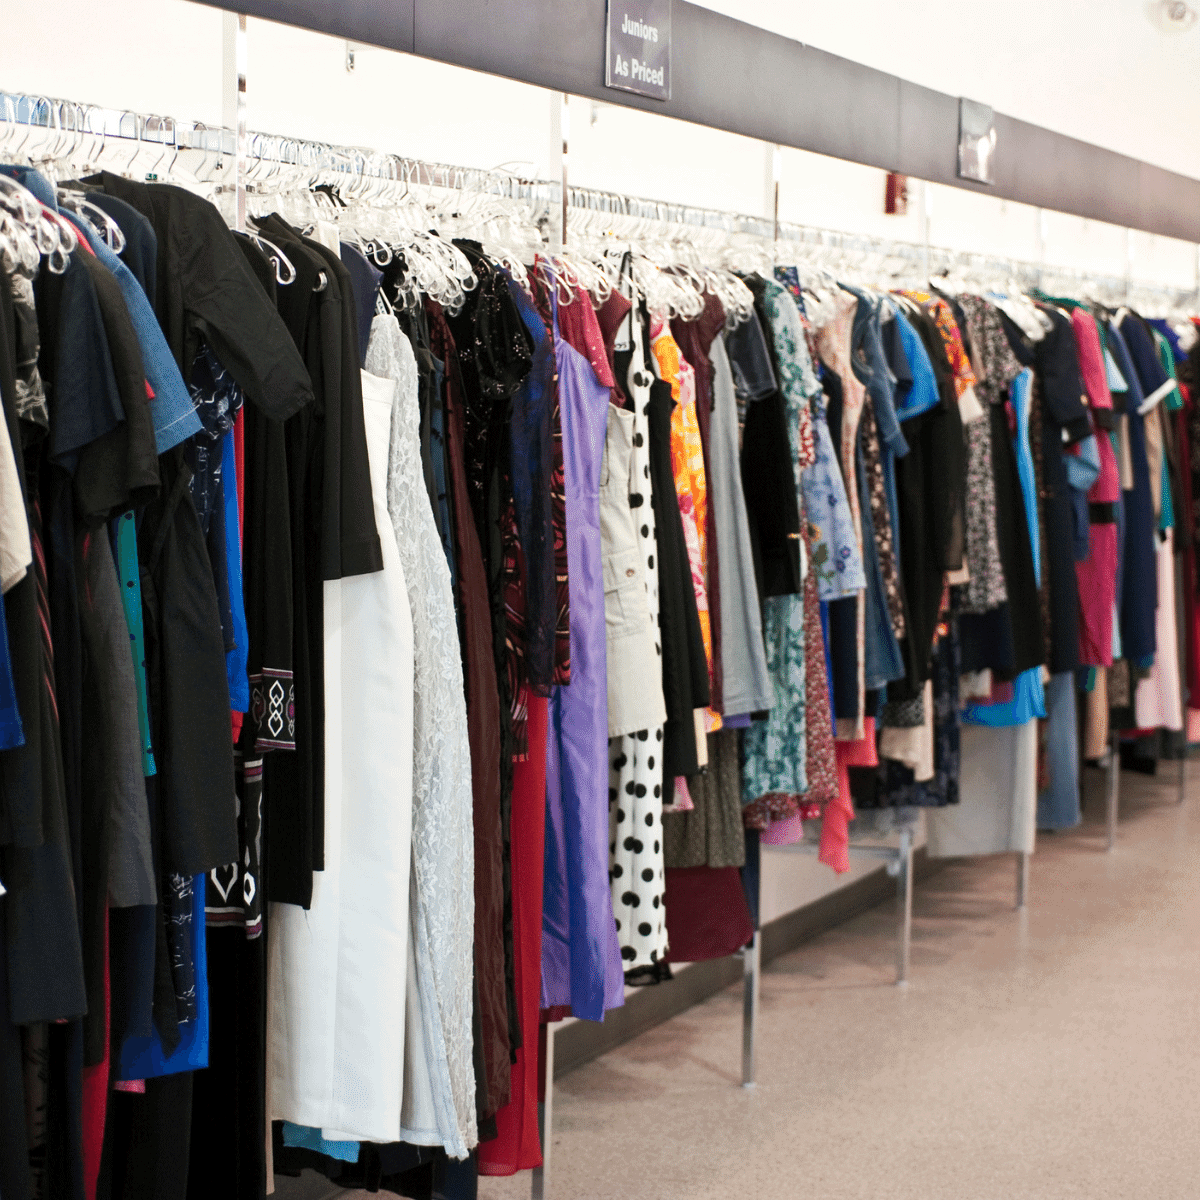 thrift store dresses hanging on racks